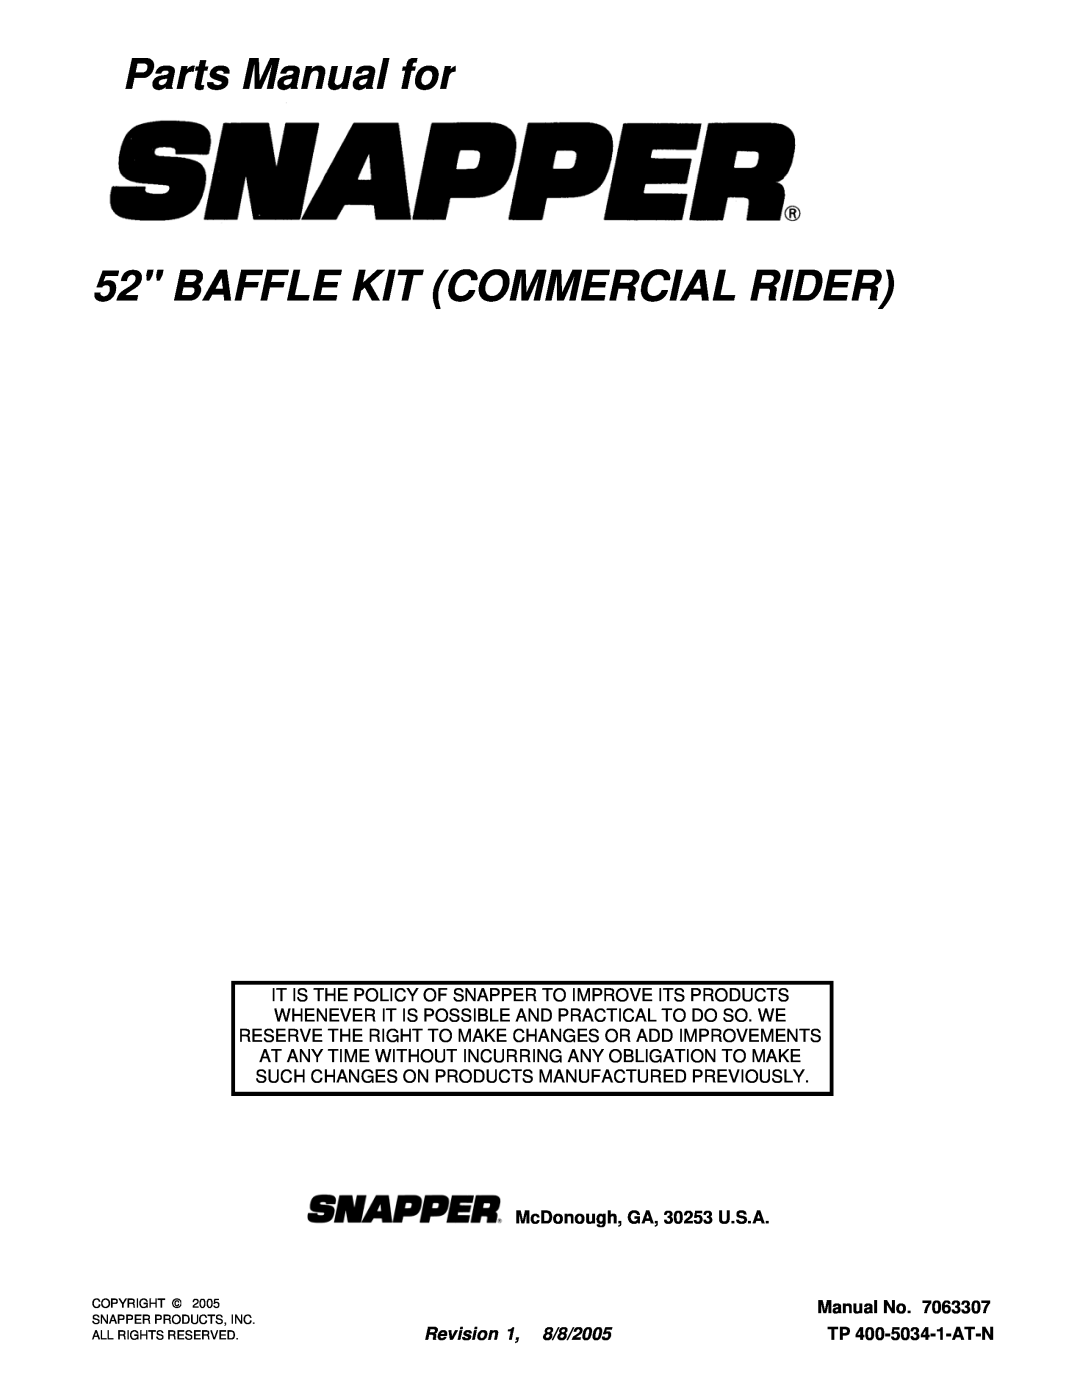 Snapper 63307 Parts Manual for 52 BAFFLE KIT COMMERCIAL RIDER, TP 400-5034-1-AT-N, McDonough, GA, 30253 U.S.A, Manual No 